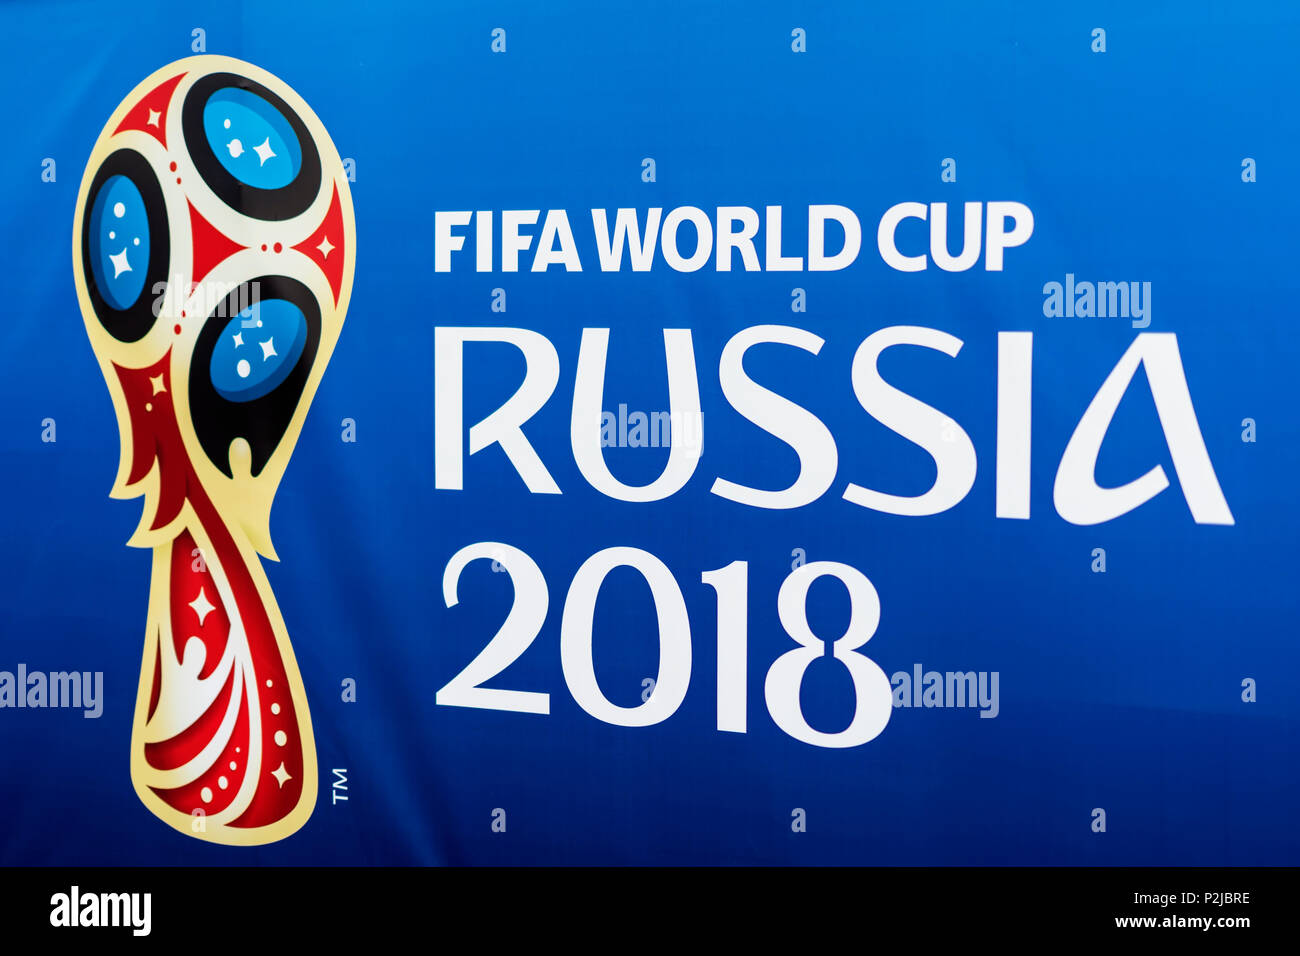 Moscou, Russie - 14 juin, 2018 emblème officiel, le logo de la Coupe du monde 2018 FIFA 2018, FIFA Fan Fest Banque D'Images